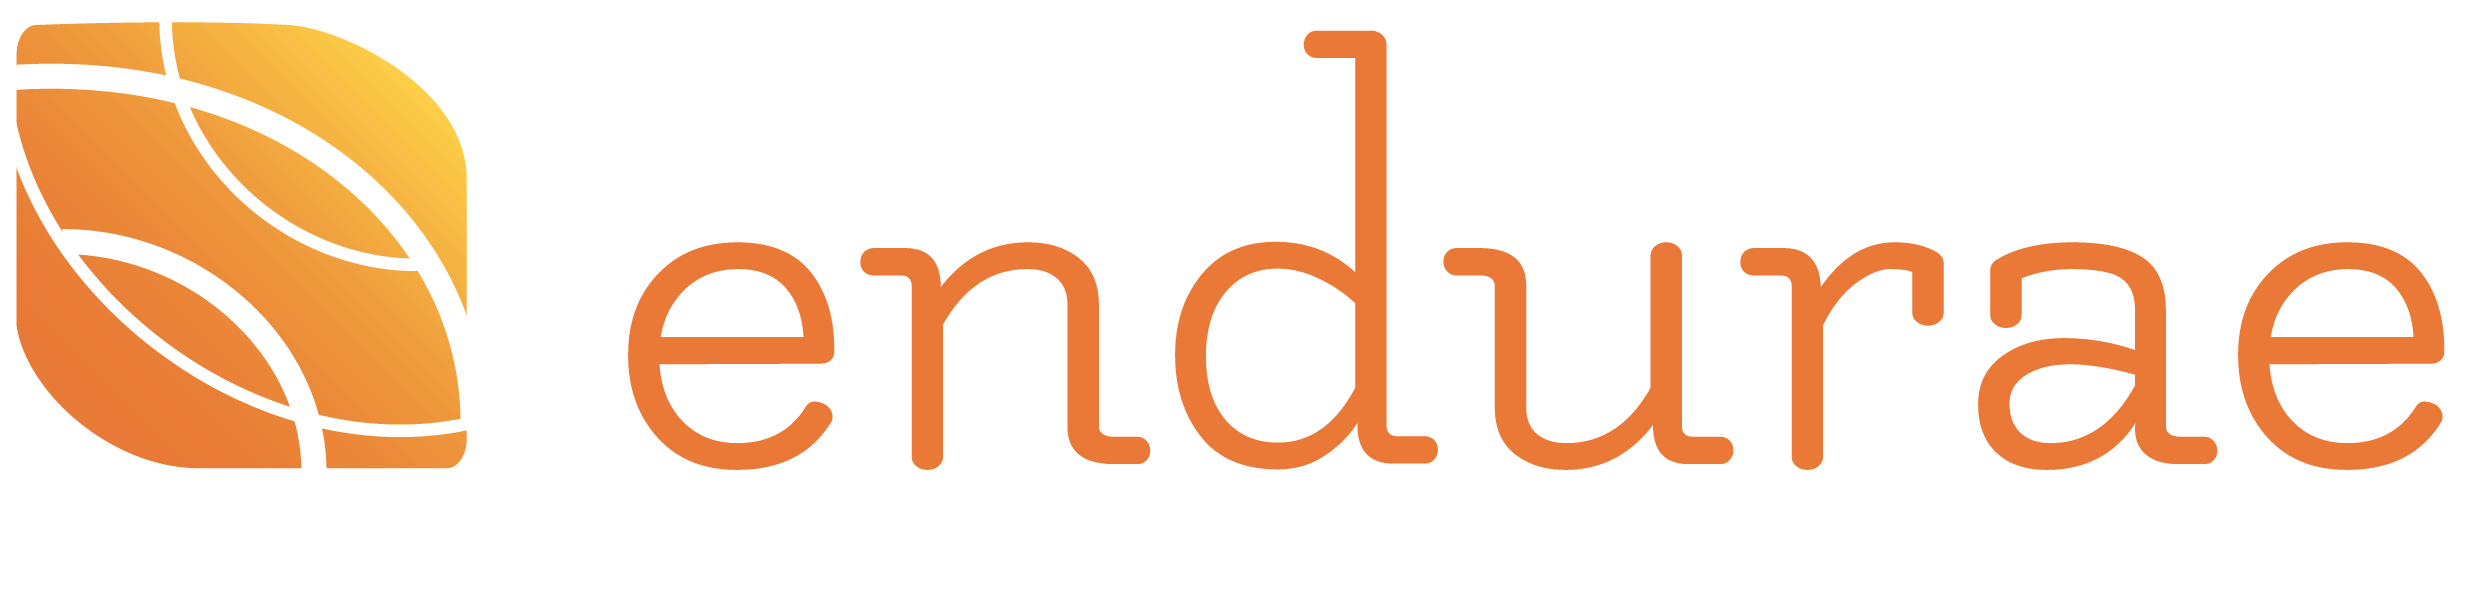 endurae's logo